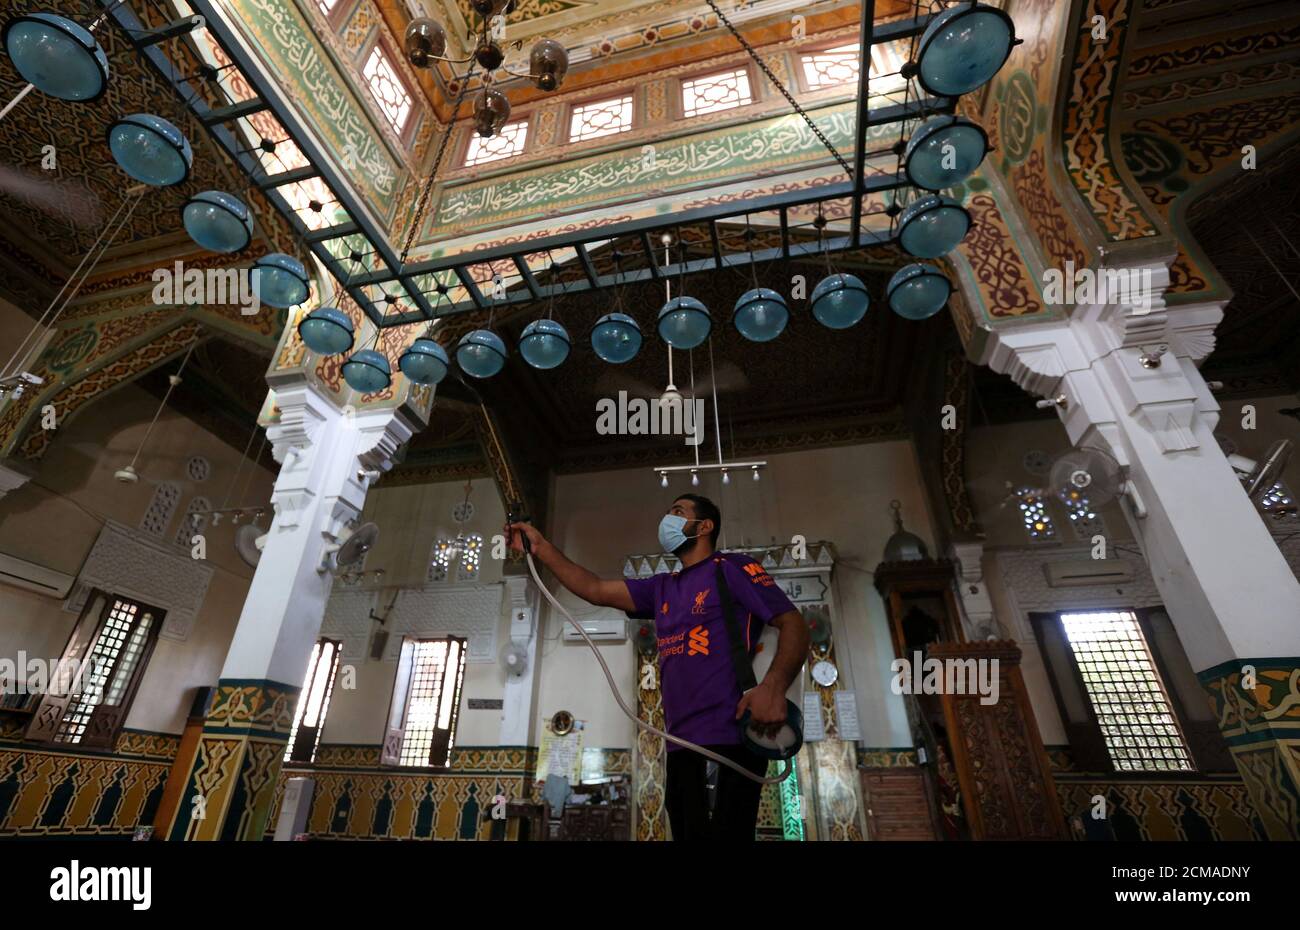 Un voluntario que lleva una máscara pulveriza desinfectante dentro de una mezquita, ya que está preparado para la oración después de ser reabierto, después del brote de la enfermedad del coronavirus (COVID-19), en el Cairo, Egipto, 26 de junio de 2020. REUTERS/Mohamed Abd el Ghany Foto de stock